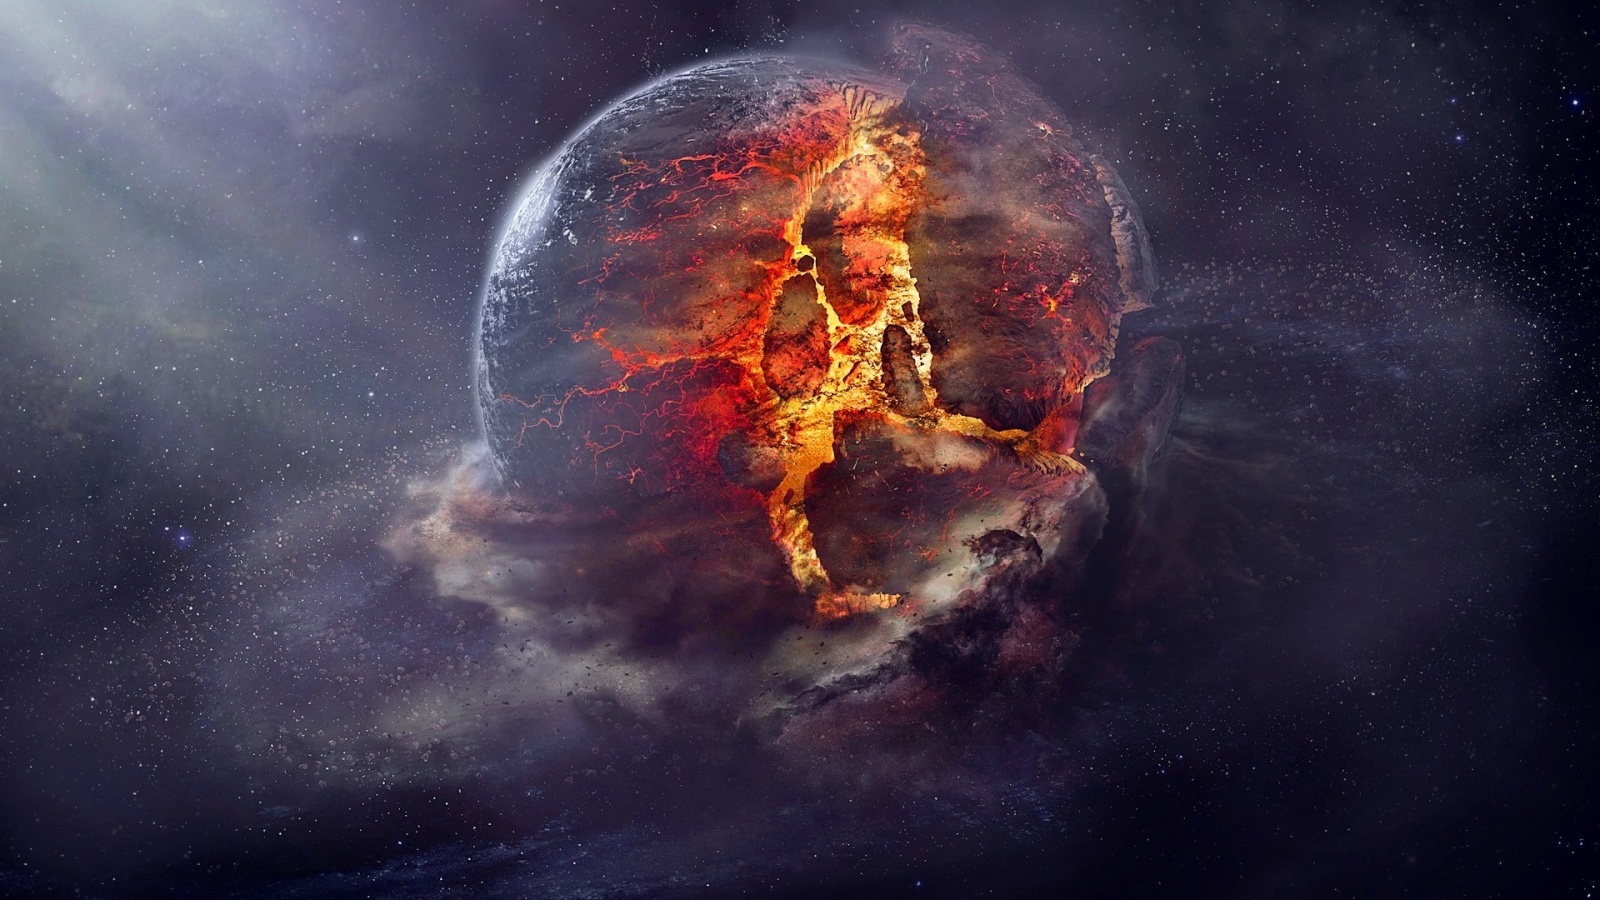 Planet Fire Destruction - Planet Destruction - HD Wallpaper 